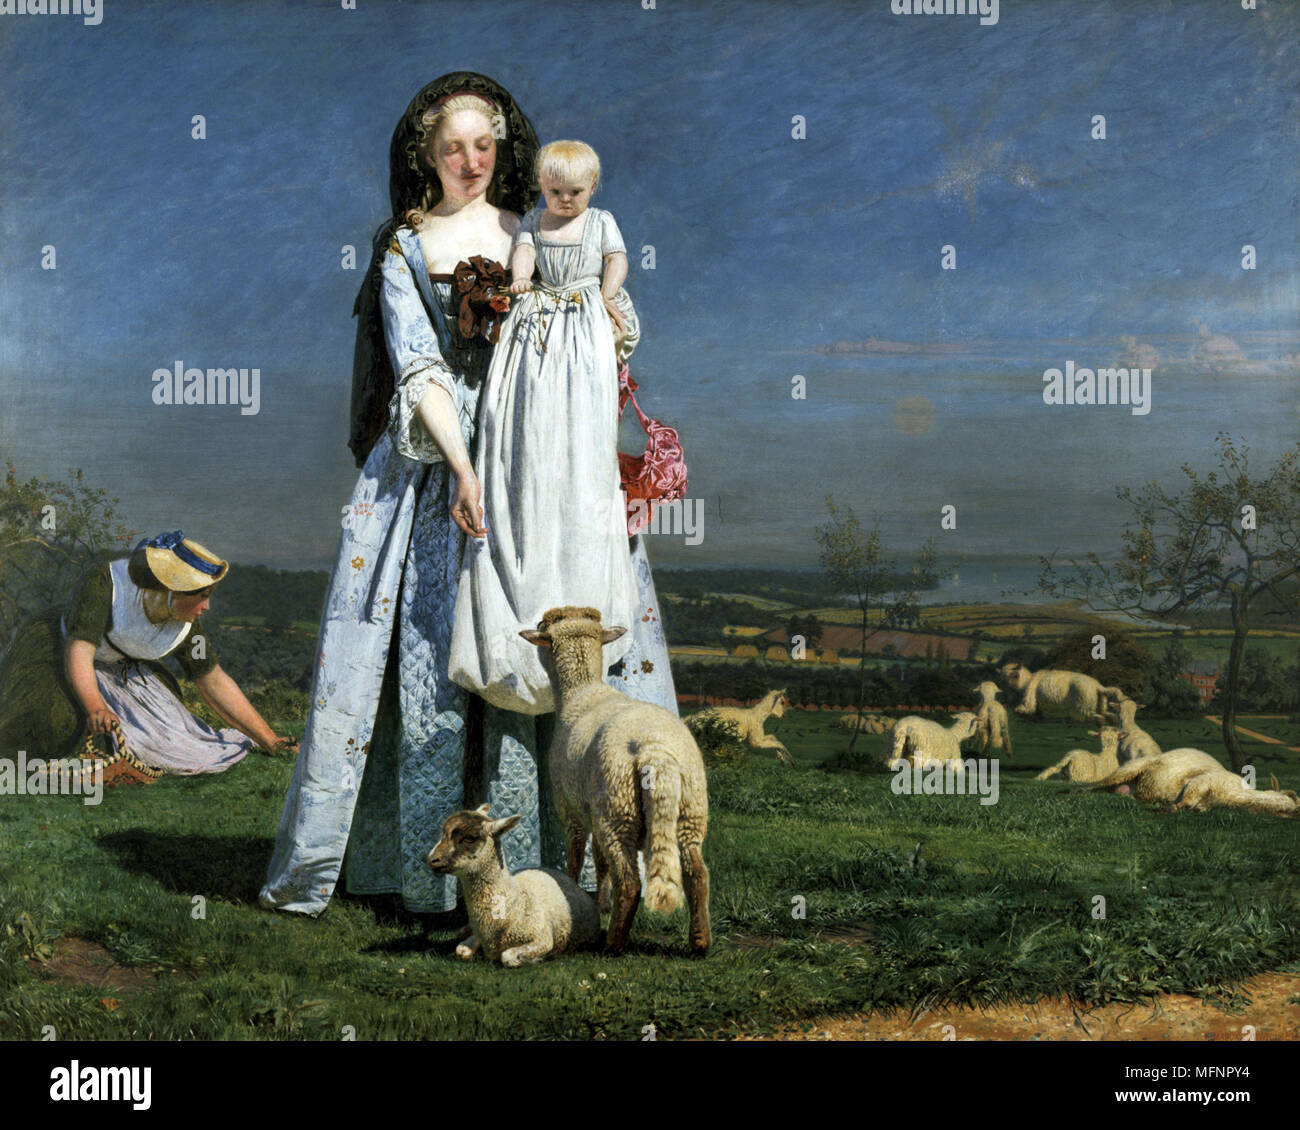 Ziemlich Baa-Lambs', 1851-1859. Ford Madox Brown (1821-1893) britische Maler. Draußen auf Clapham Common, in der Nähe von London gemalt. Seine zweite Frau Emma und ihre Tochter Cathy aufgeworfen als die Mutter und das Kind. Landschaft Schafe England Stockfoto